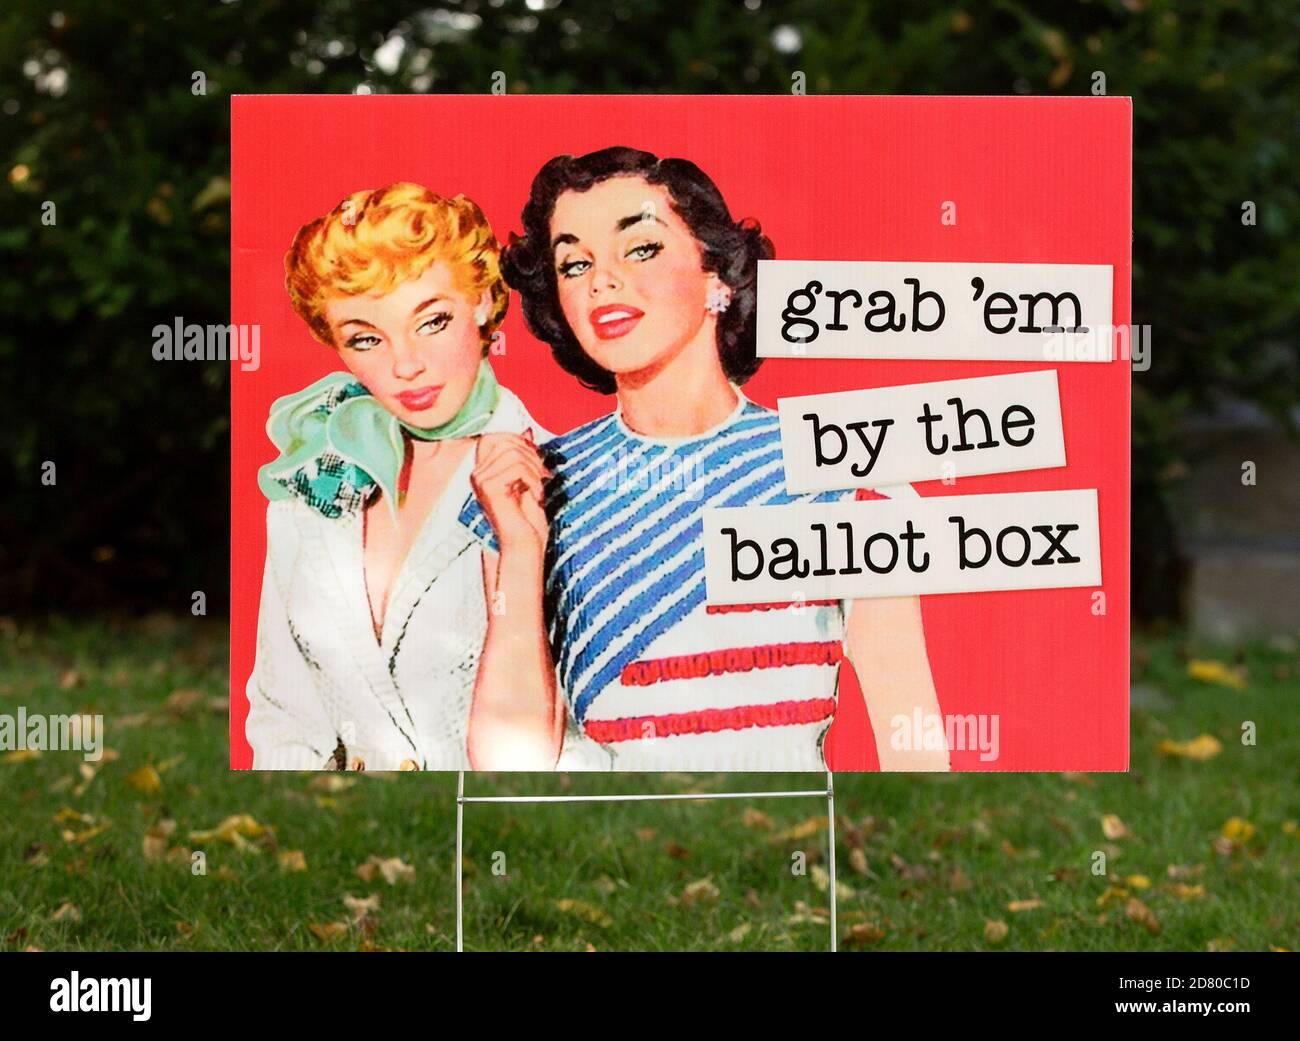 Un 2020 retro elezione cantiere segno con 2 donne con la citazione, afferrare 'em dal ballottaggio bodx. Il segno è una parodia del commento lewd di Donald Trump da Th Foto Stock